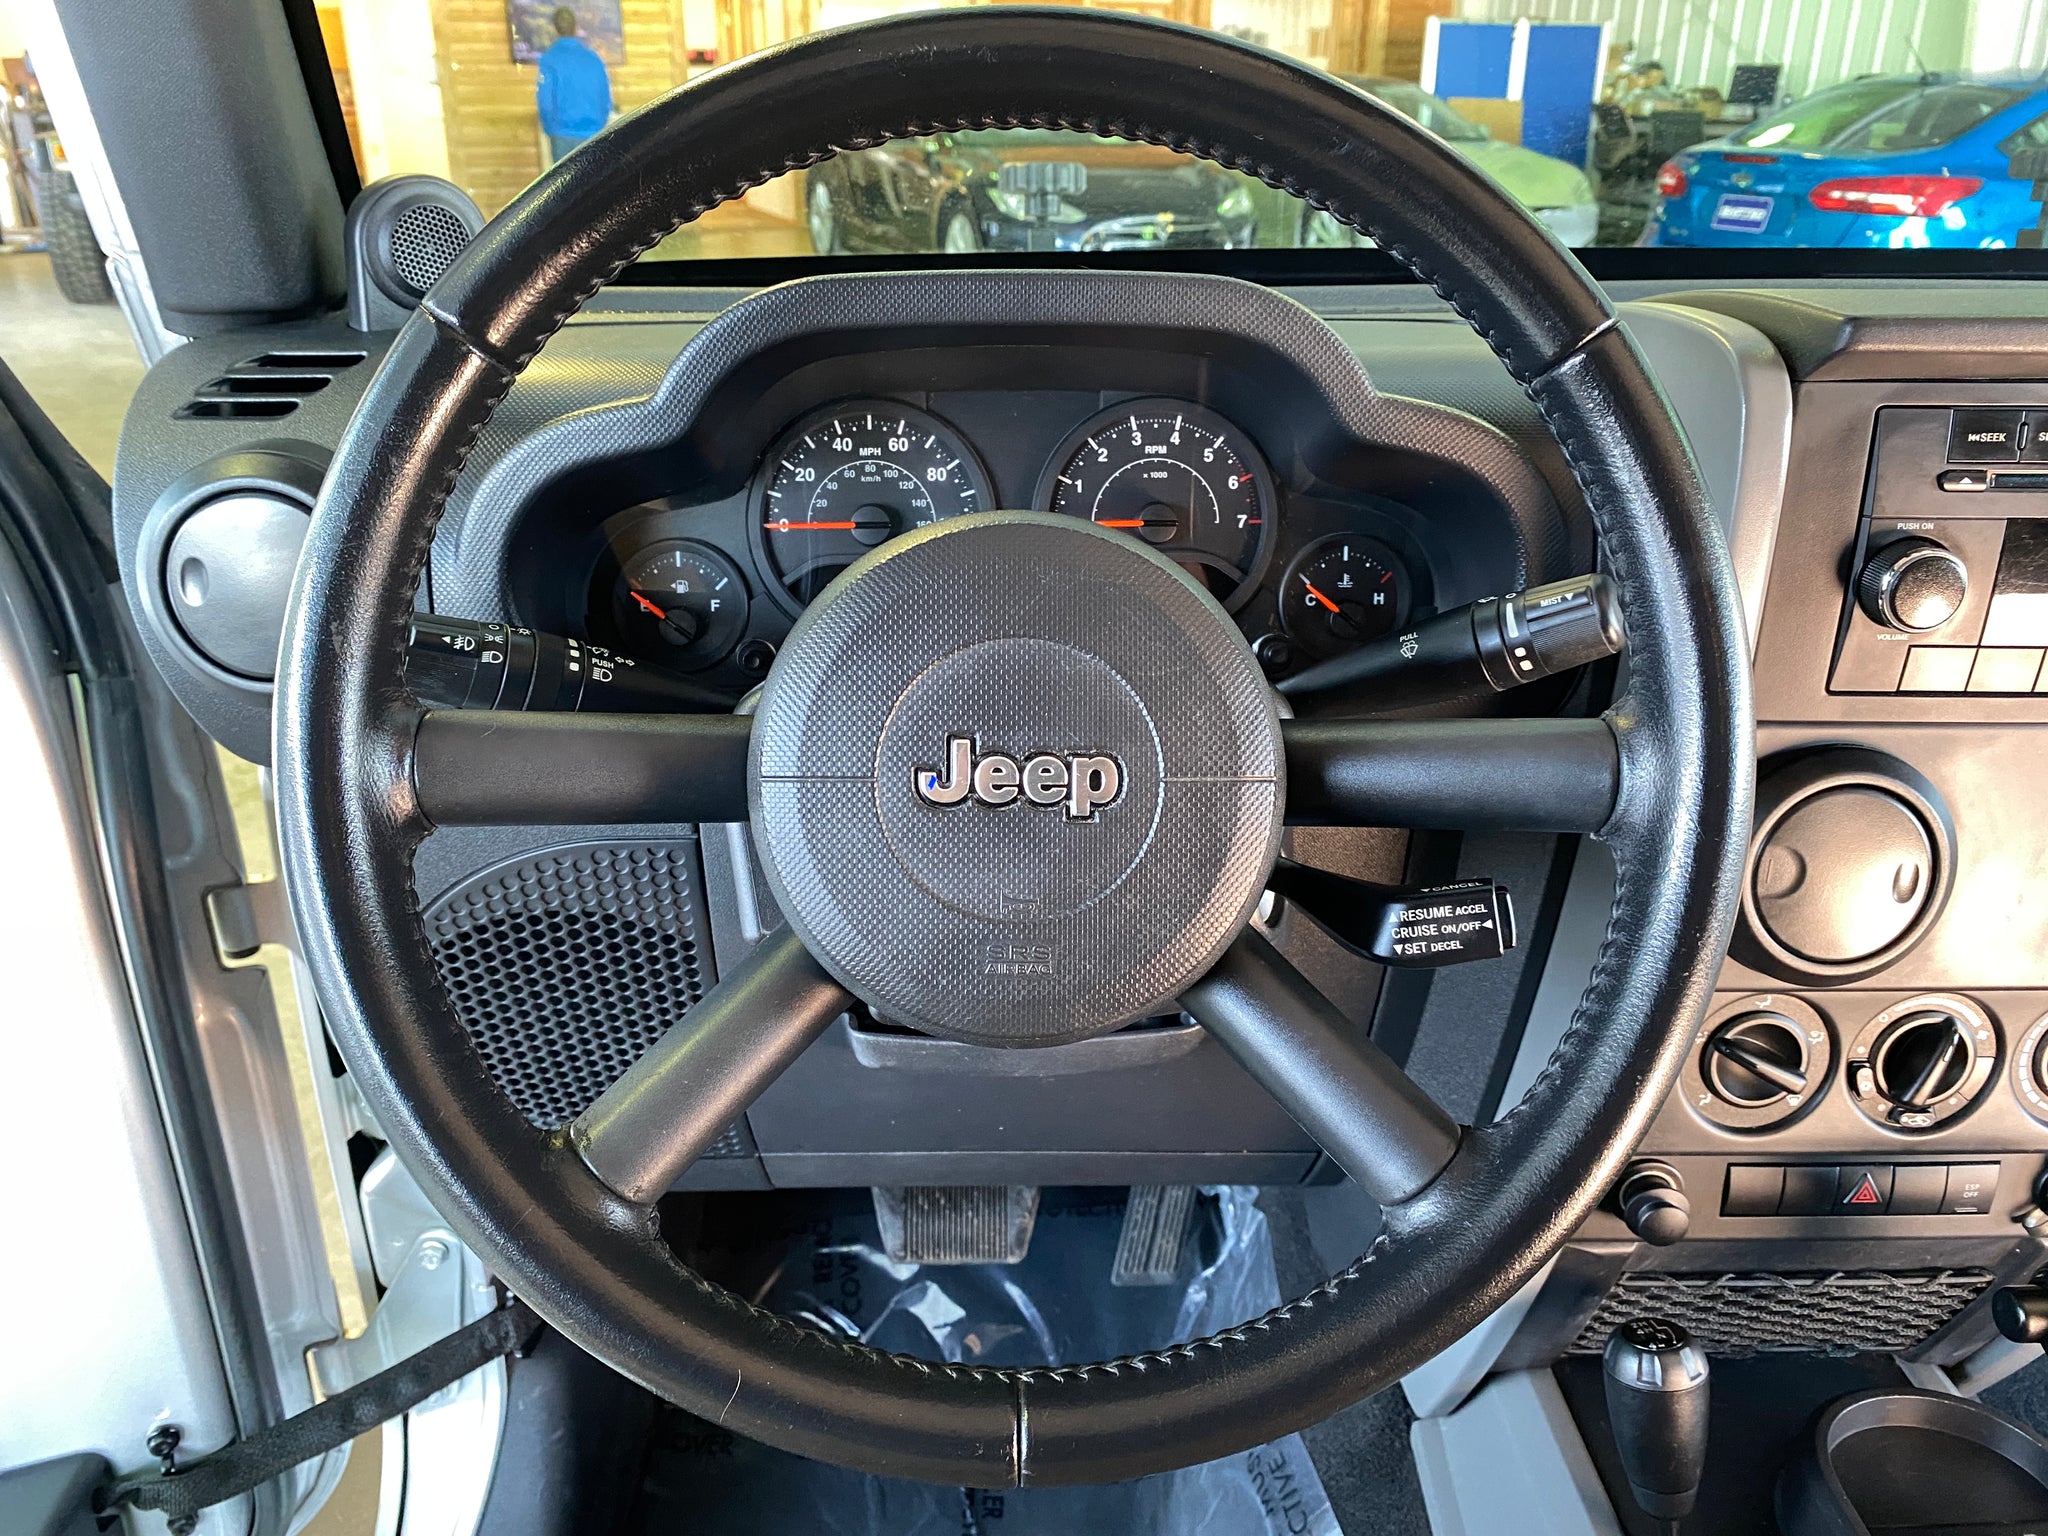 2009 Jeep Wrangler X 2 Door - ShiftedMN